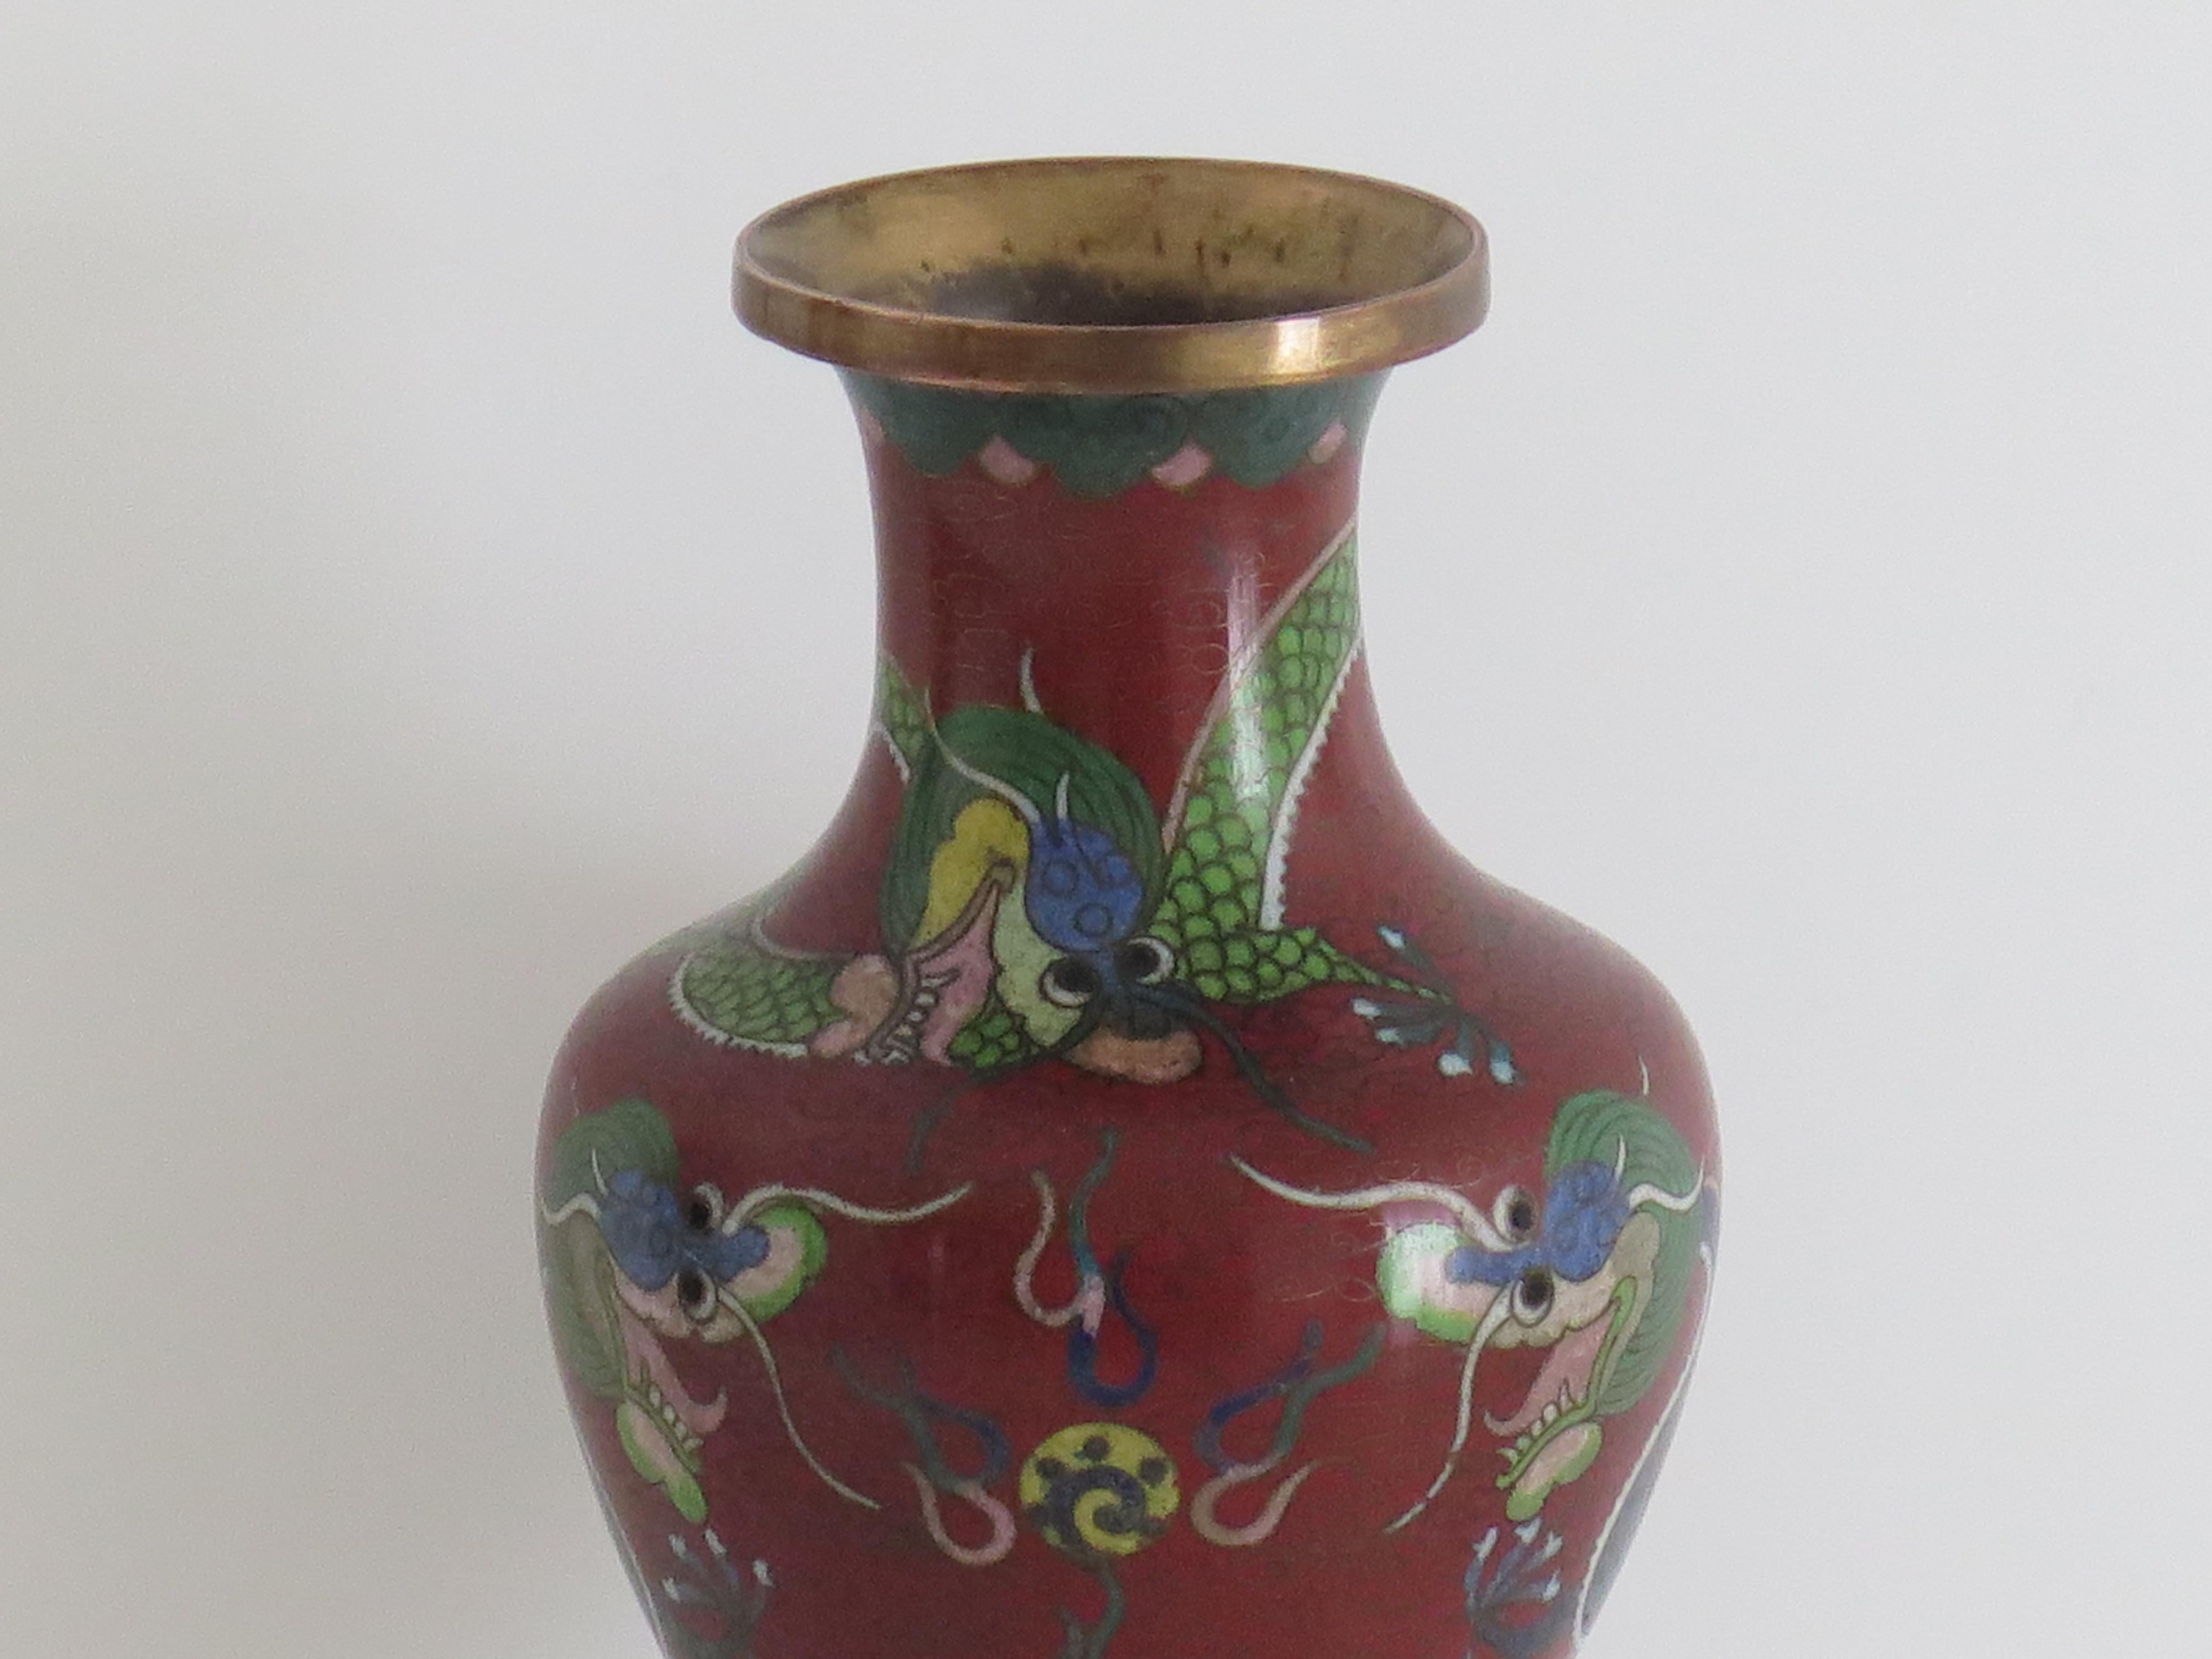 Il s'agit d'un vase cloisonné de taille moyenne très décoratif, fabriqué en Chine et datant de la période de la République chinoise, vers les années 1920. 

Le vase a une bonne forme de balustre. Elle a été réalisée en alliage de bronze avec de